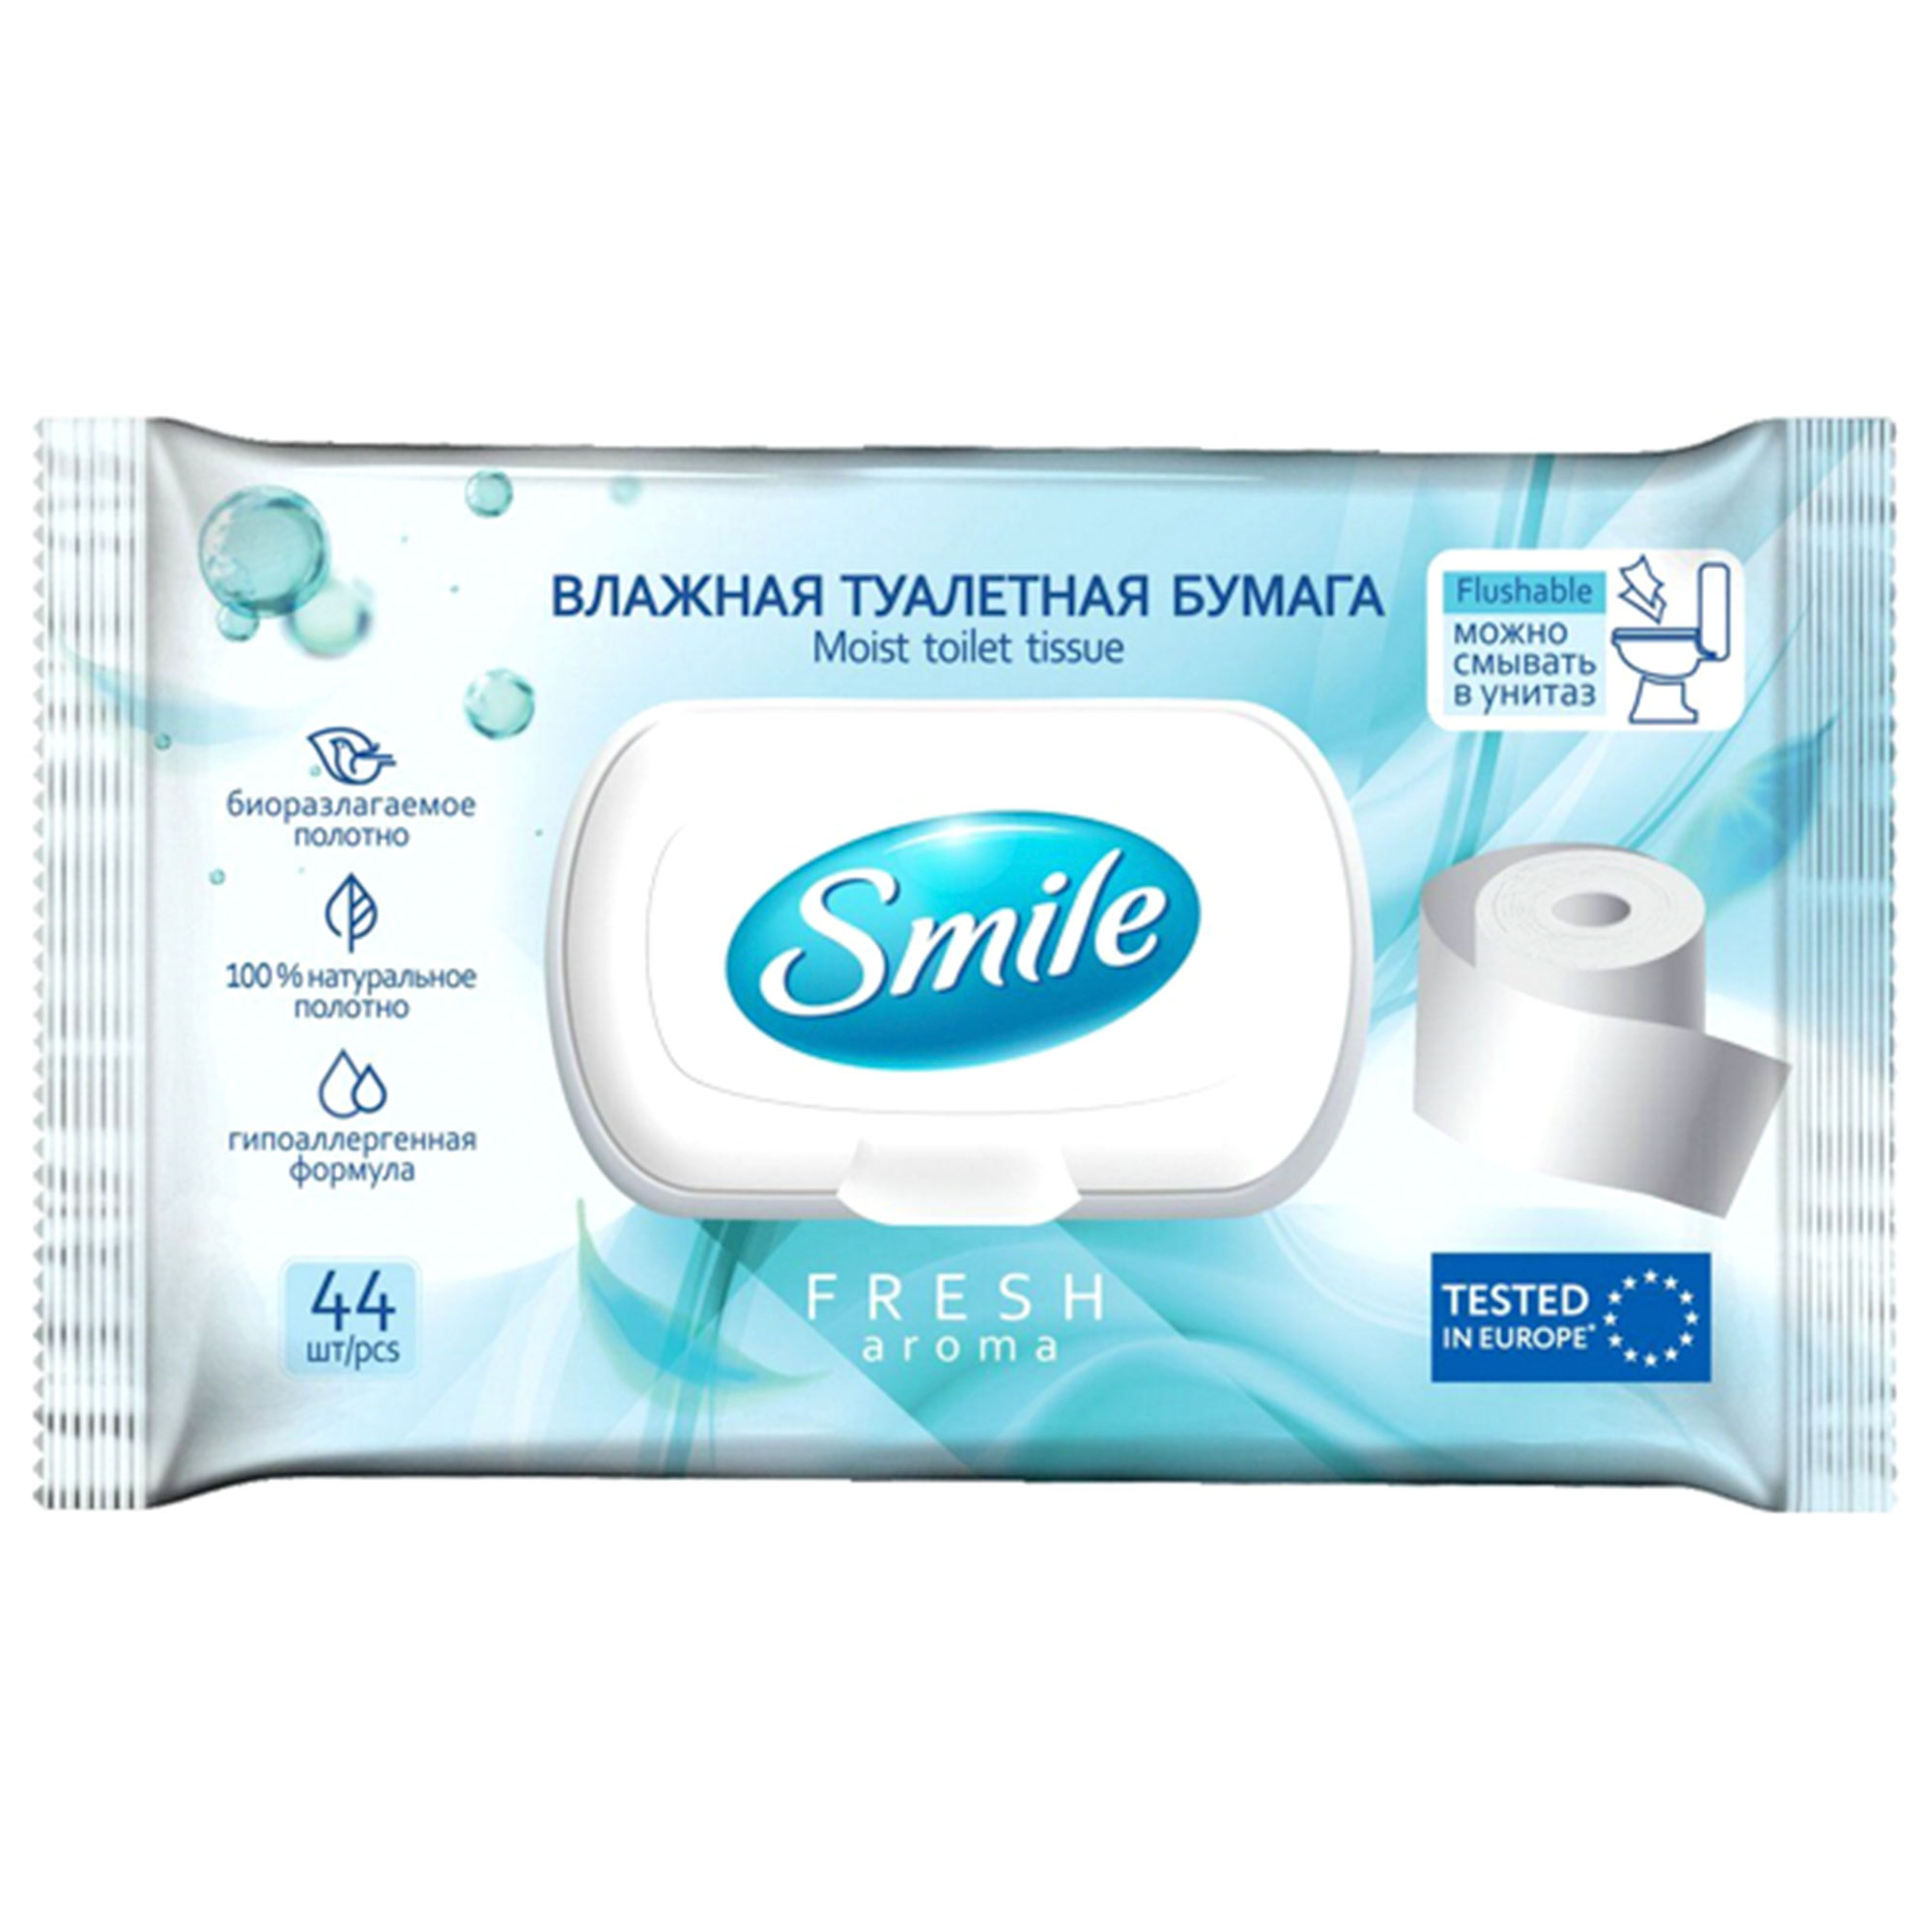 Влажная туалетная бумага Smile Fresh 44 шт